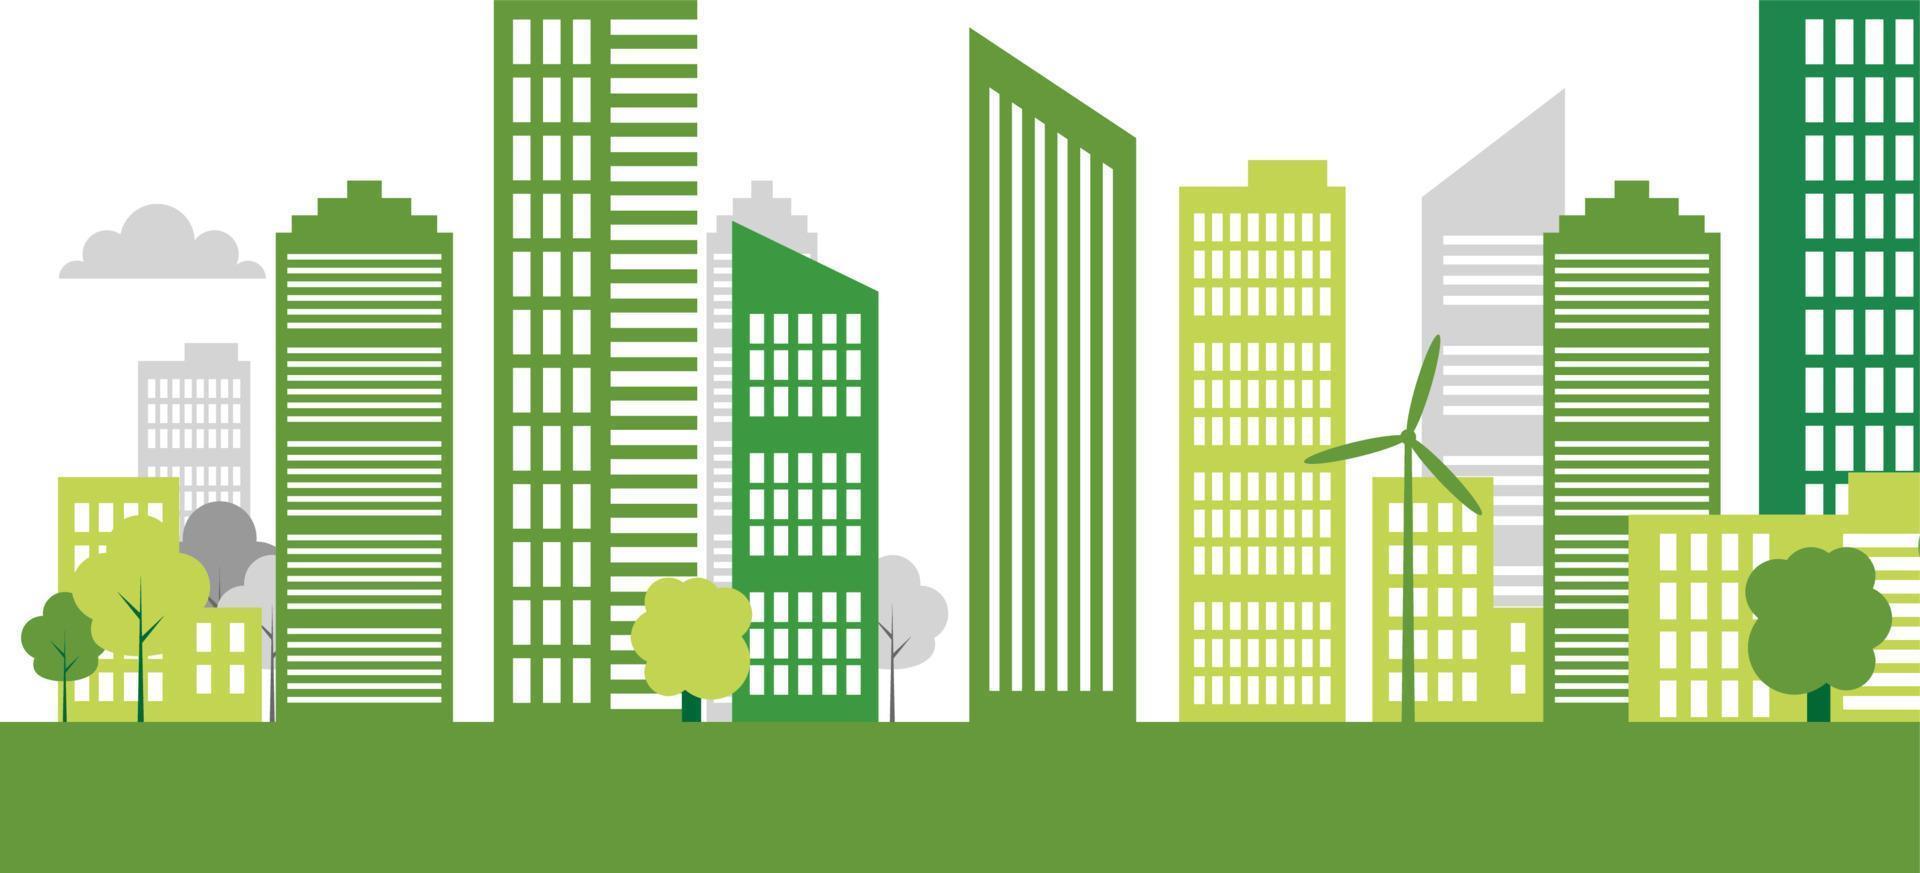 Concepto de ciudad ecológica y medio ambiente con ideas ecológicas, ilustración vectorial vector